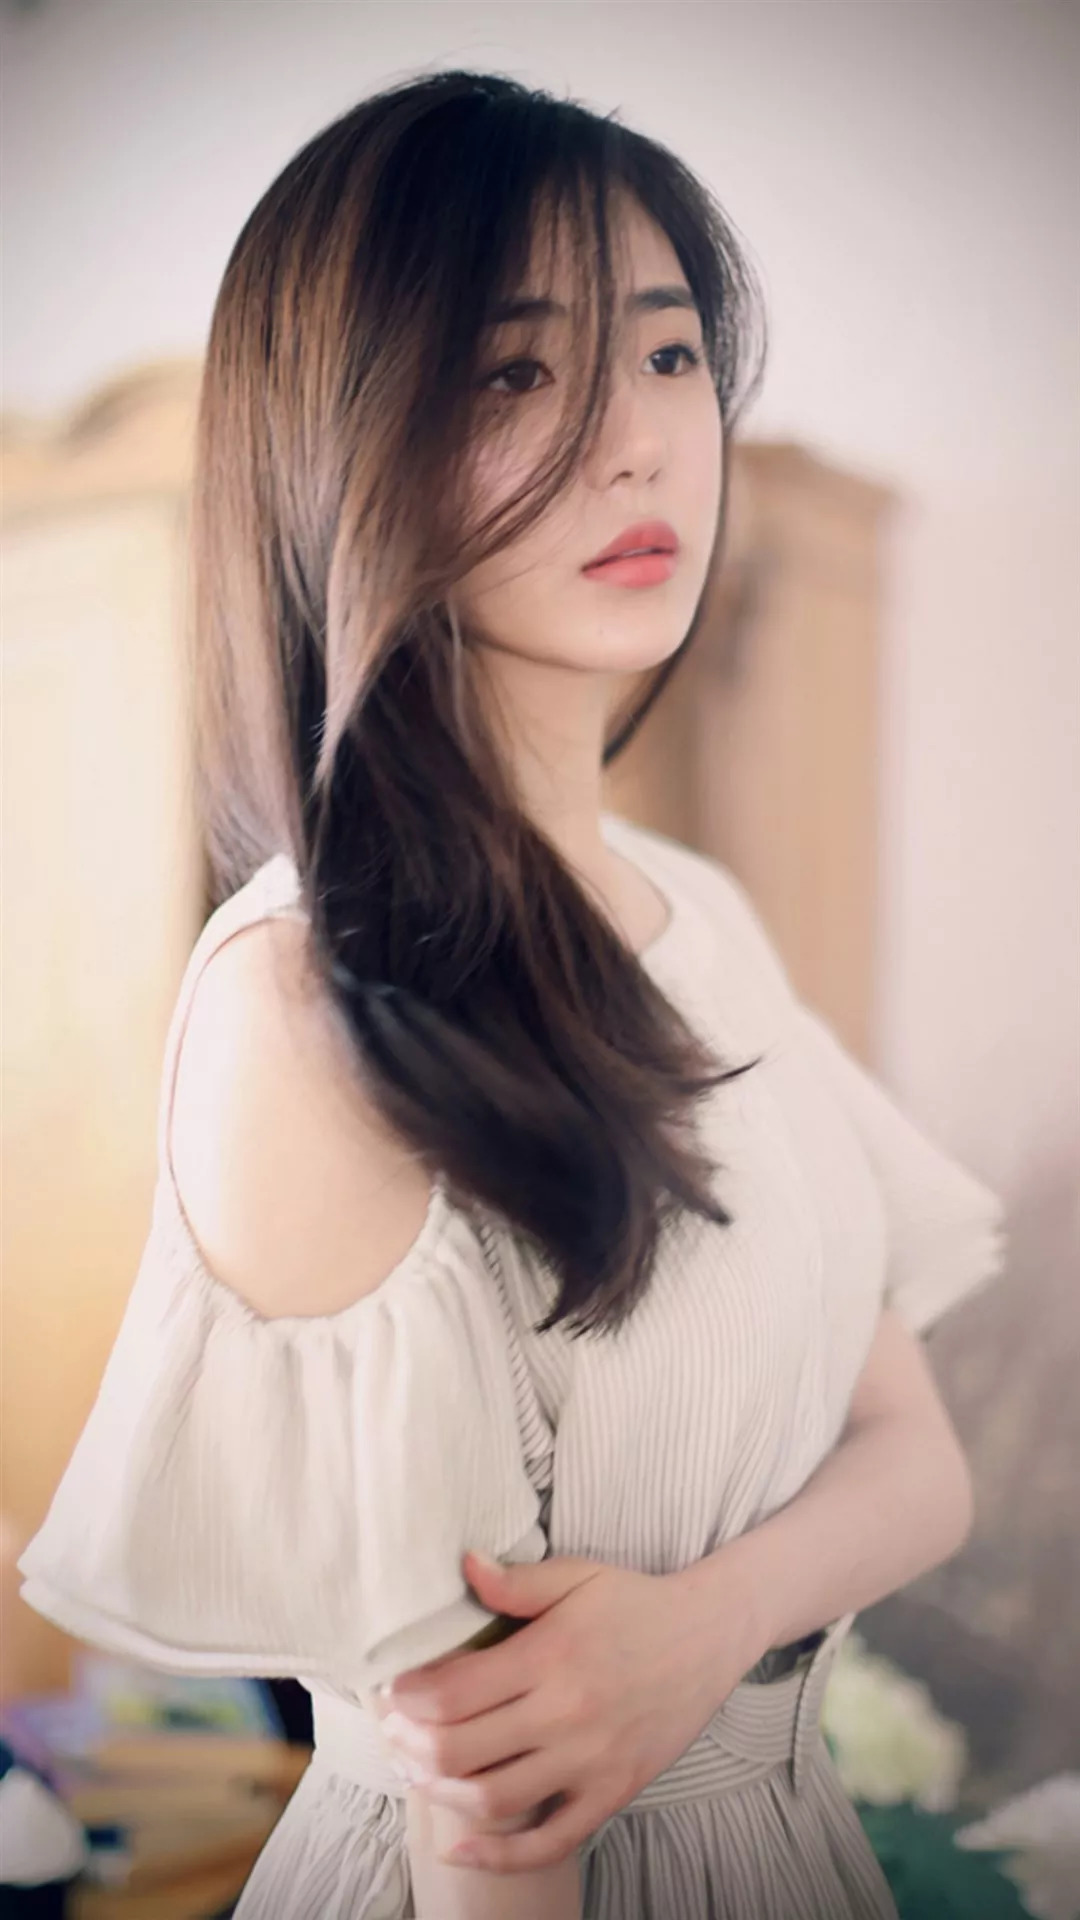 最漂亮的女生_刘雯算是穿白衬衣最漂亮的女生了吧